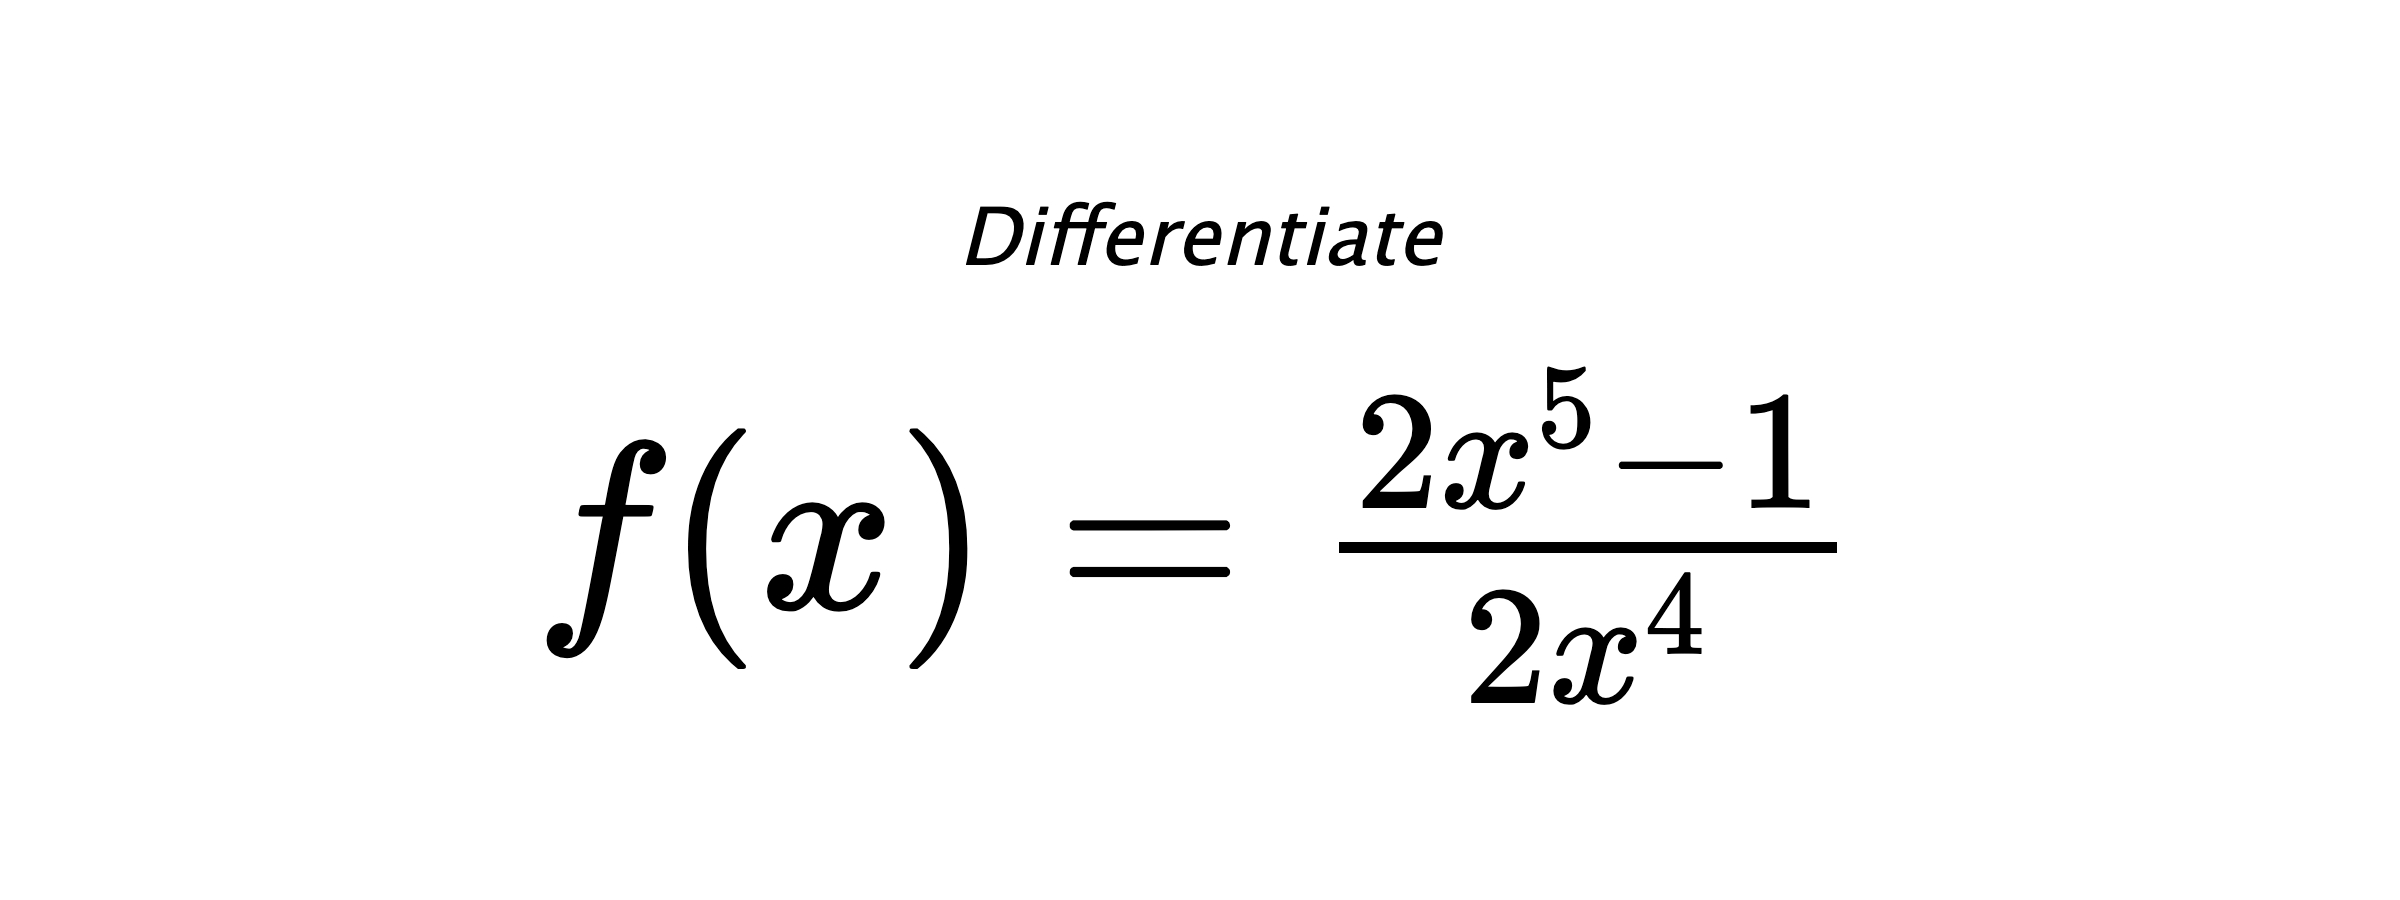 Differentiate $ f(x) = \frac{2 x^{5} - 1}{2 x^{4}} $